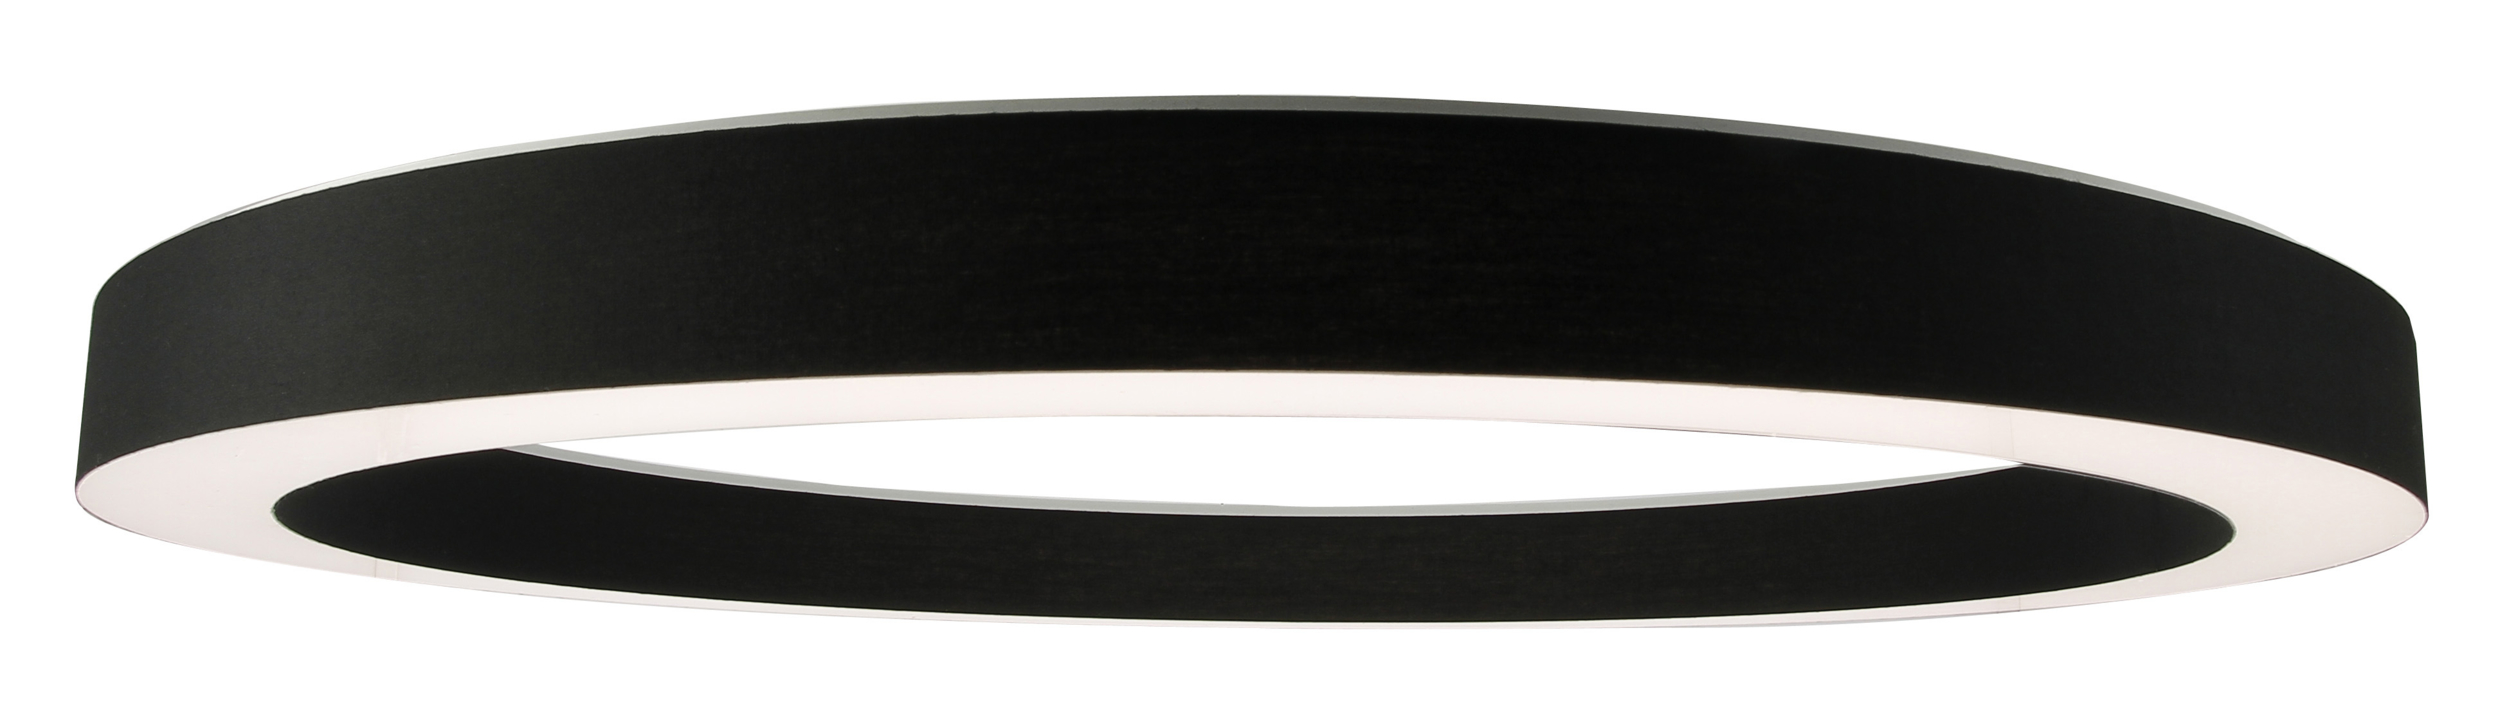 Suspension design LED HALO noire 116 cm